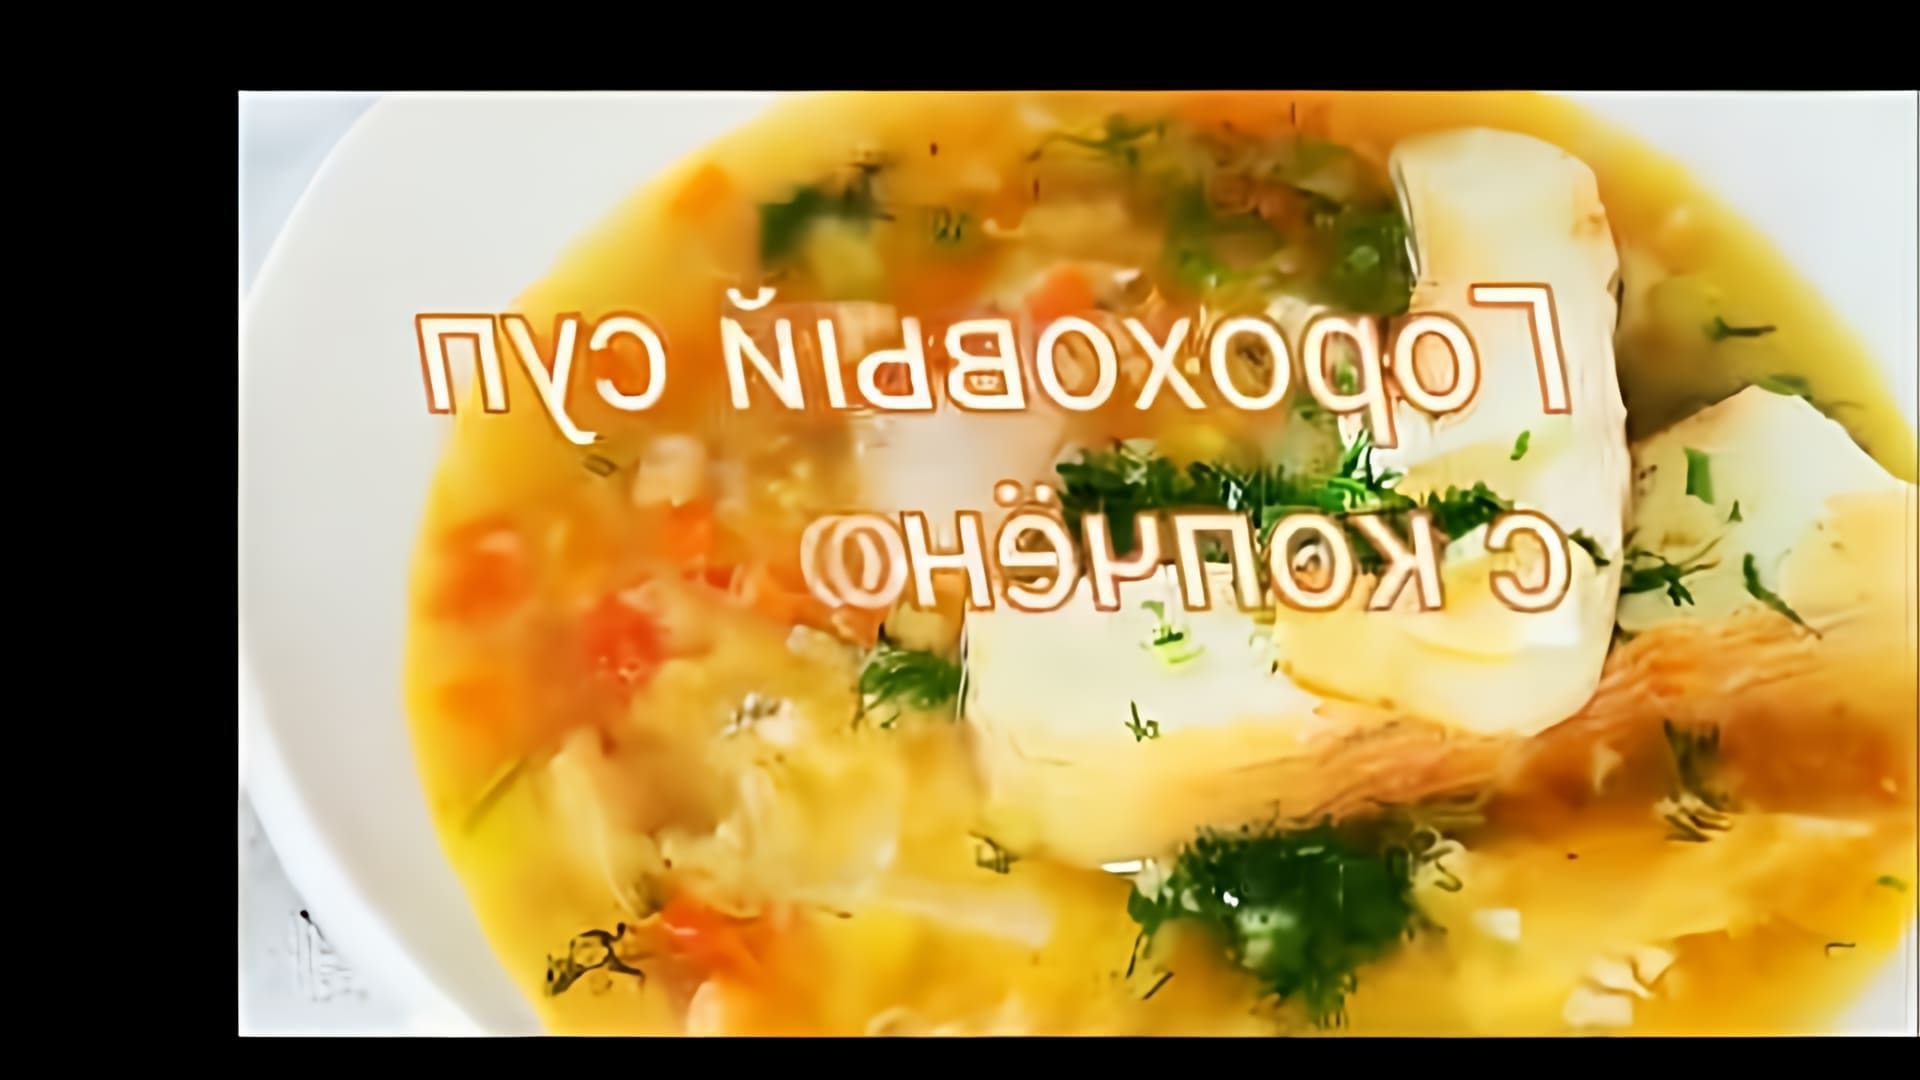 В этом видео демонстрируется рецепт горохового супа с копчёностями, но без картофеля